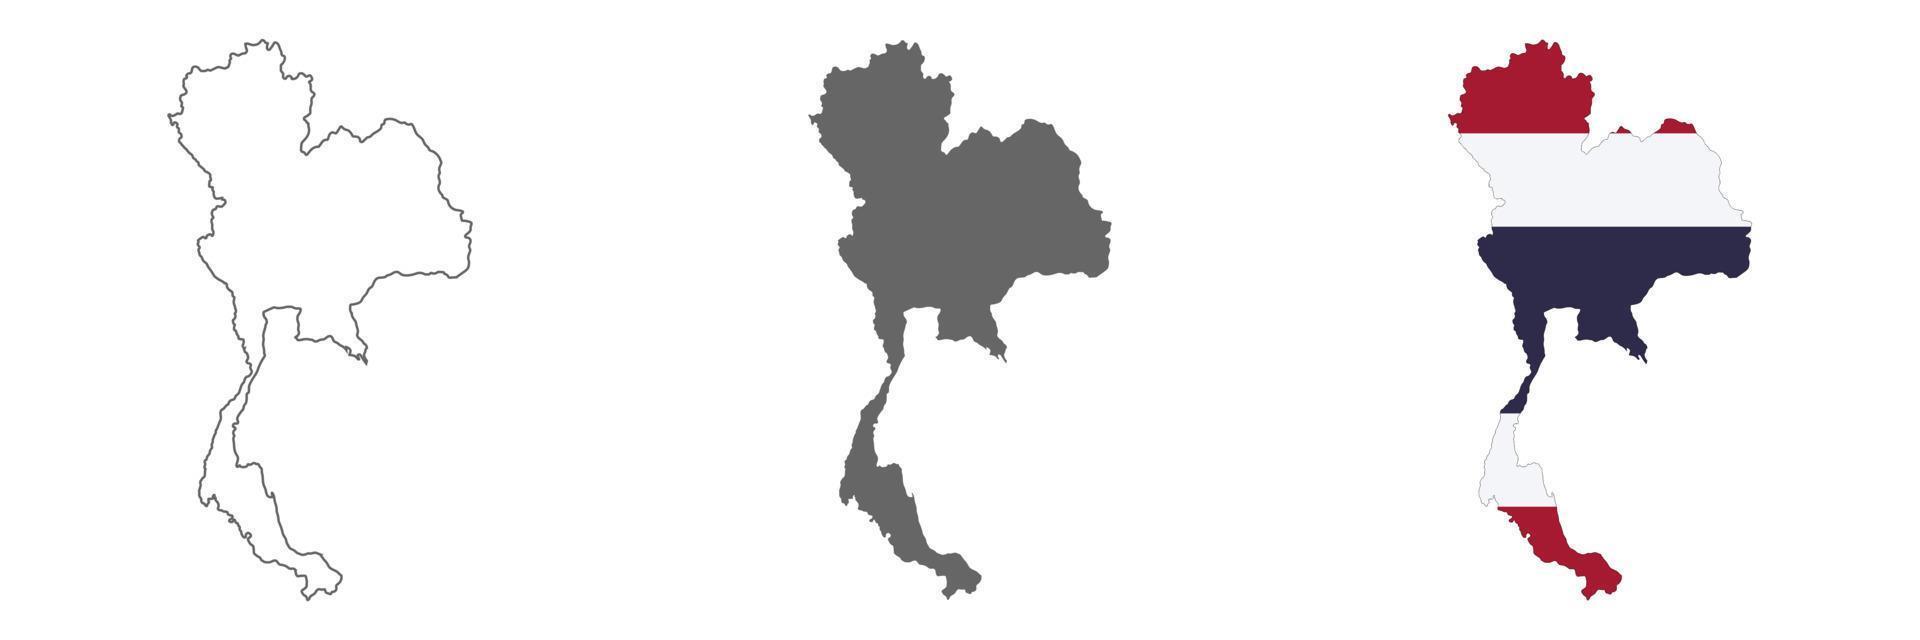 mappa della thailandia altamente dettagliata con bordi isolati su sfondo vettore